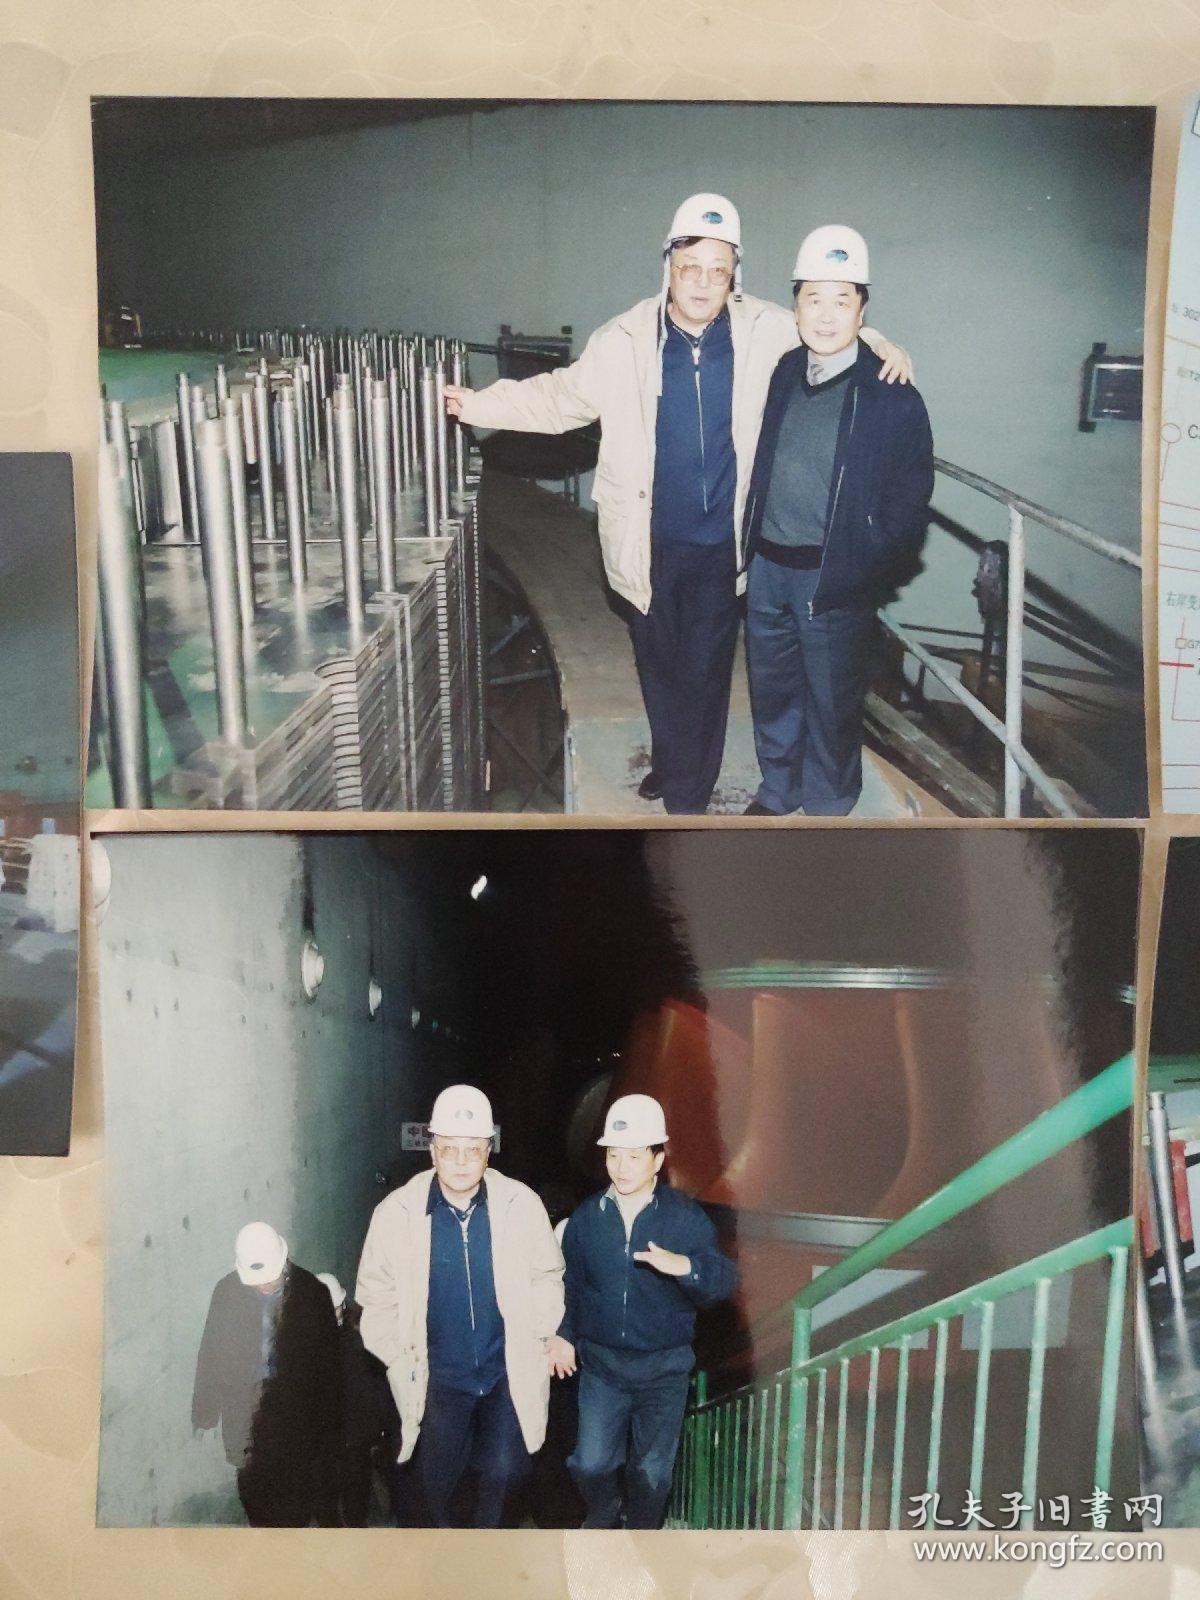 彩色照片：王超拍摄---工程师们检查水电站的发电设备的彩色照片       共5张照片合售     彩色照片箱3   00193